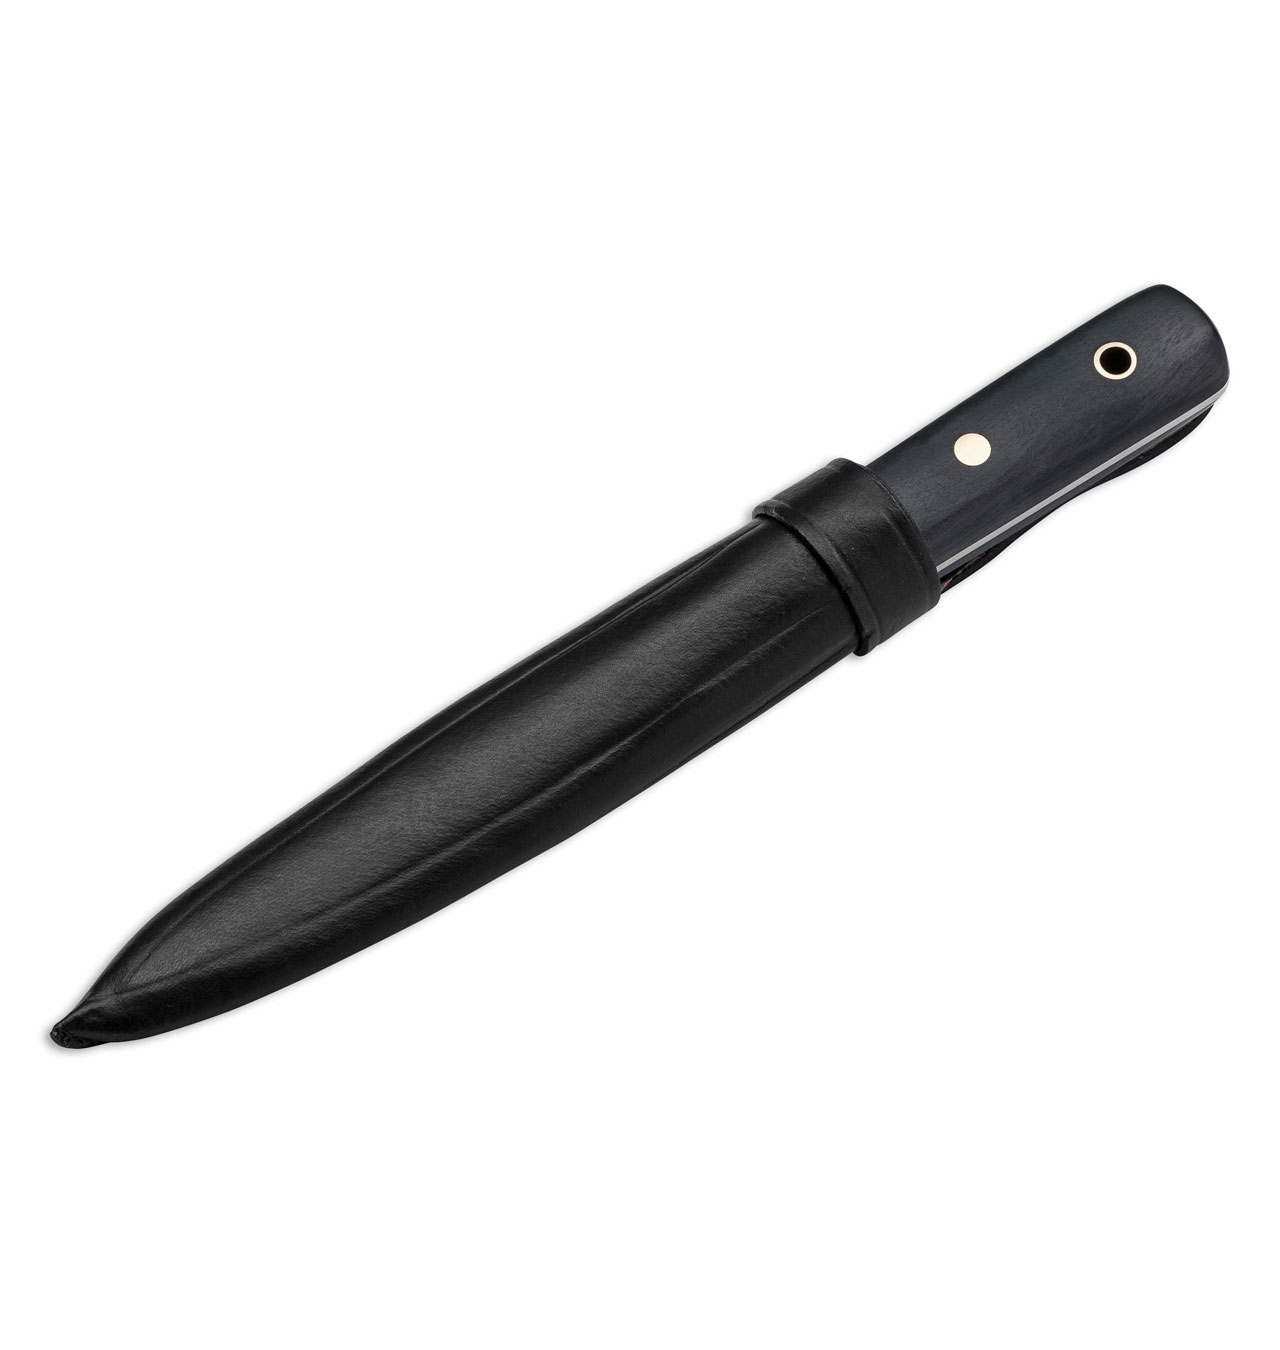 Otter Messer - Boat Knife/Sailors Knife